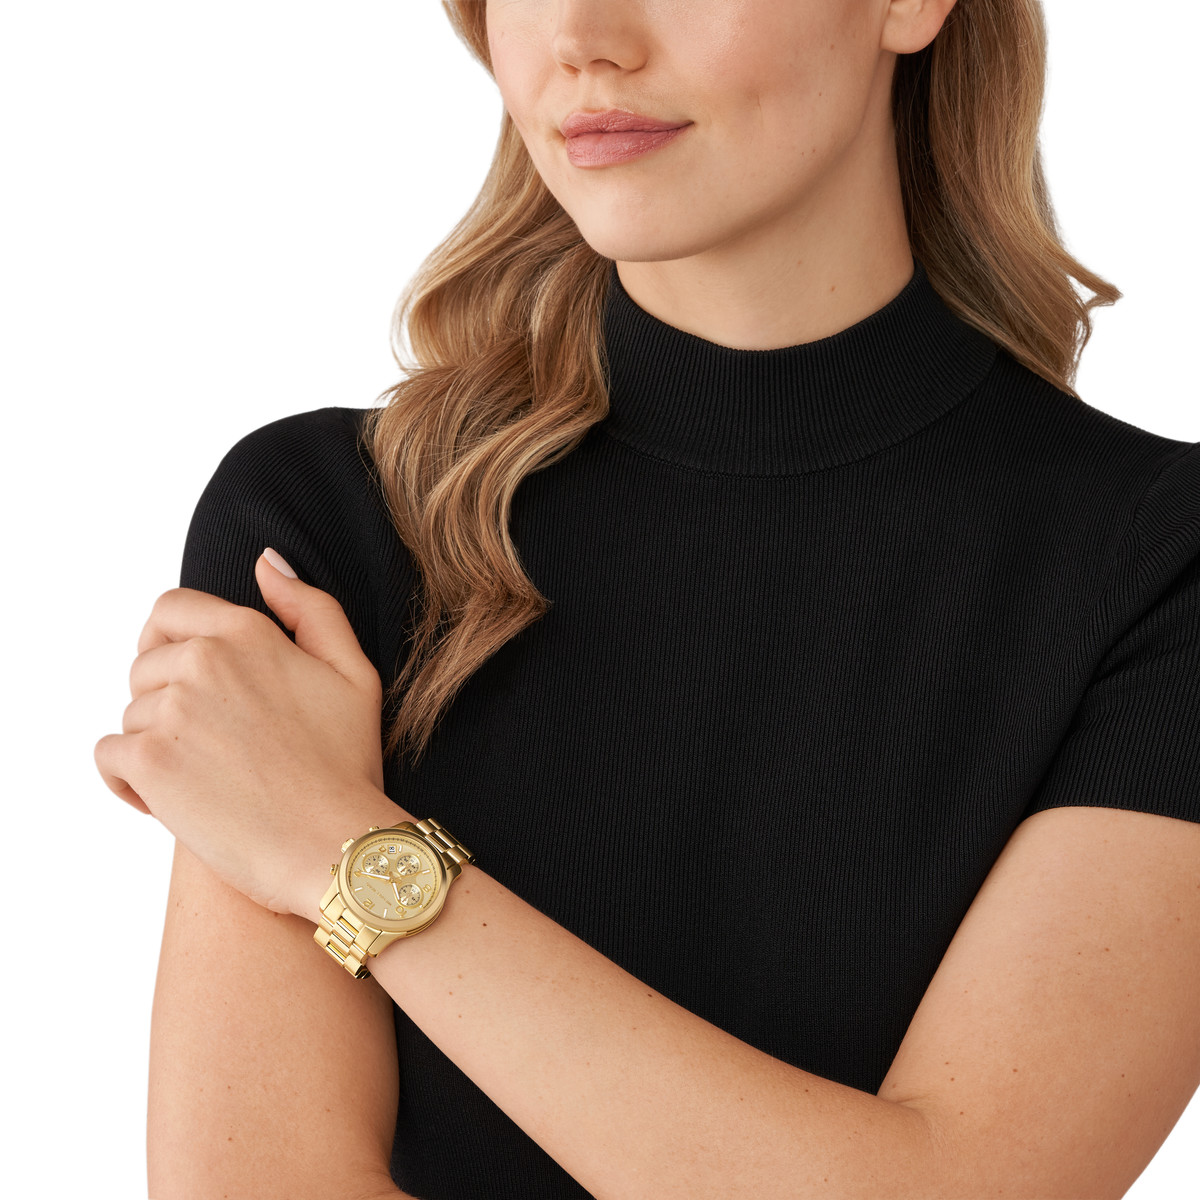 Montre MICHAEL KORS Runway femme bracelet acier inoxydable doré - vue porté 1